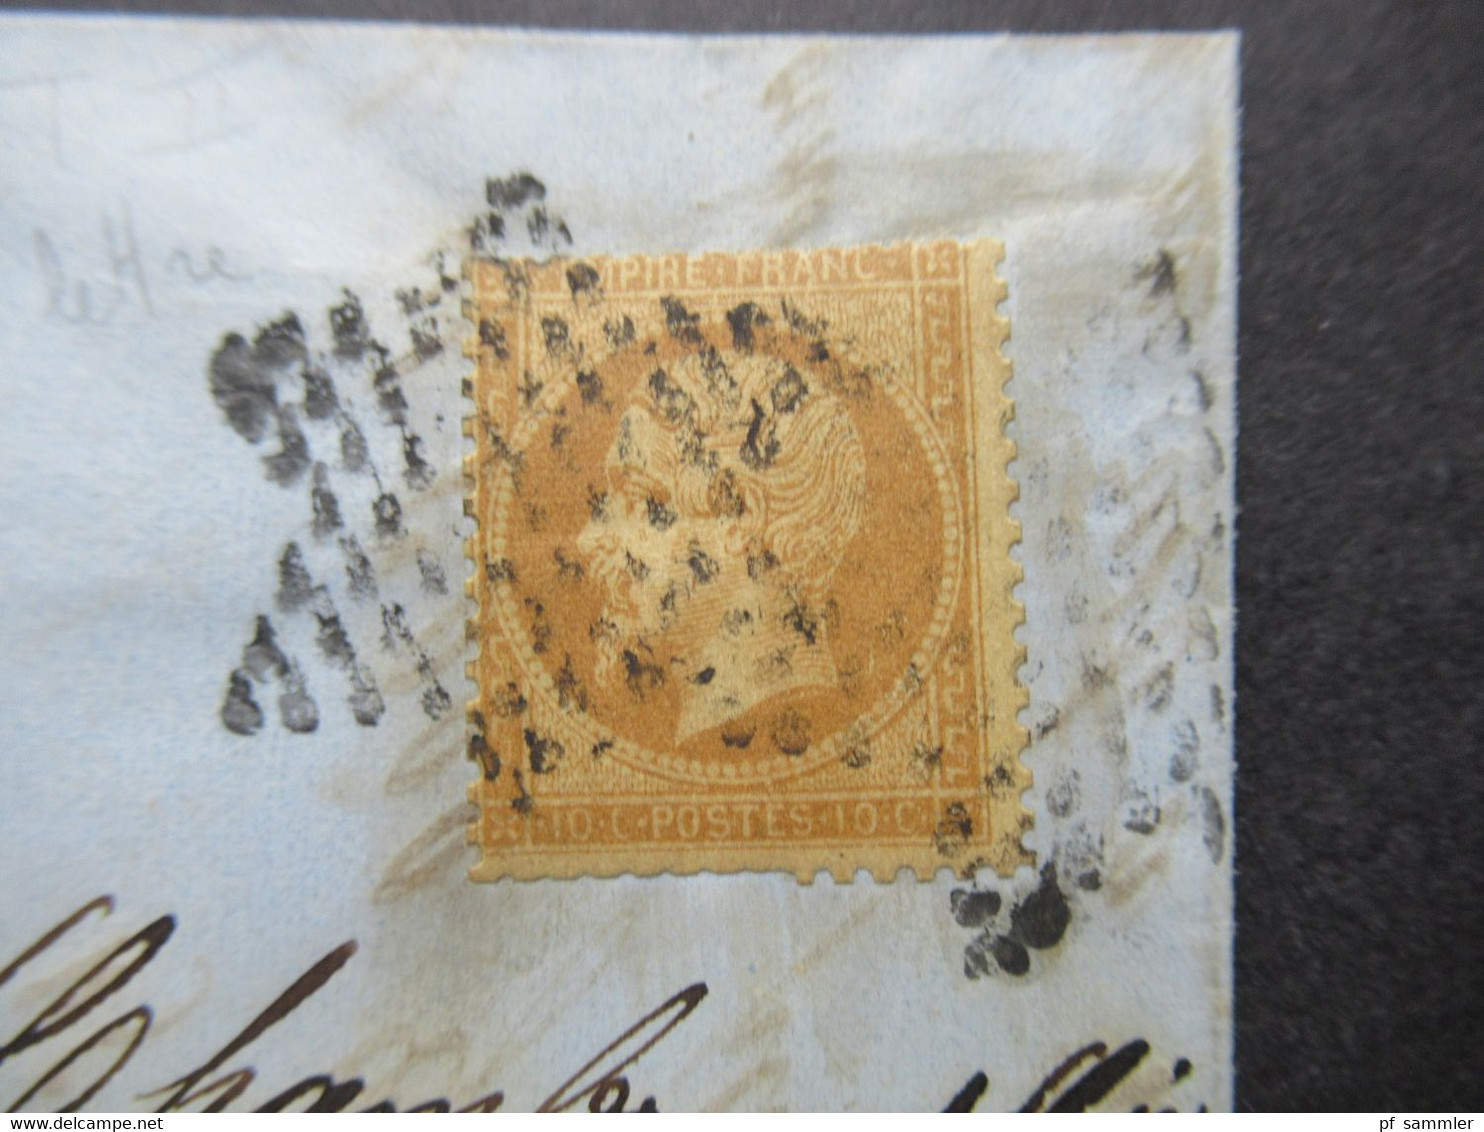 Frankreich 1864 Napoleon III. Michel Nr.20 EF Mit Sternstempel Paris Ortsbrief Mit Inhalt - 1862 Napoleon III